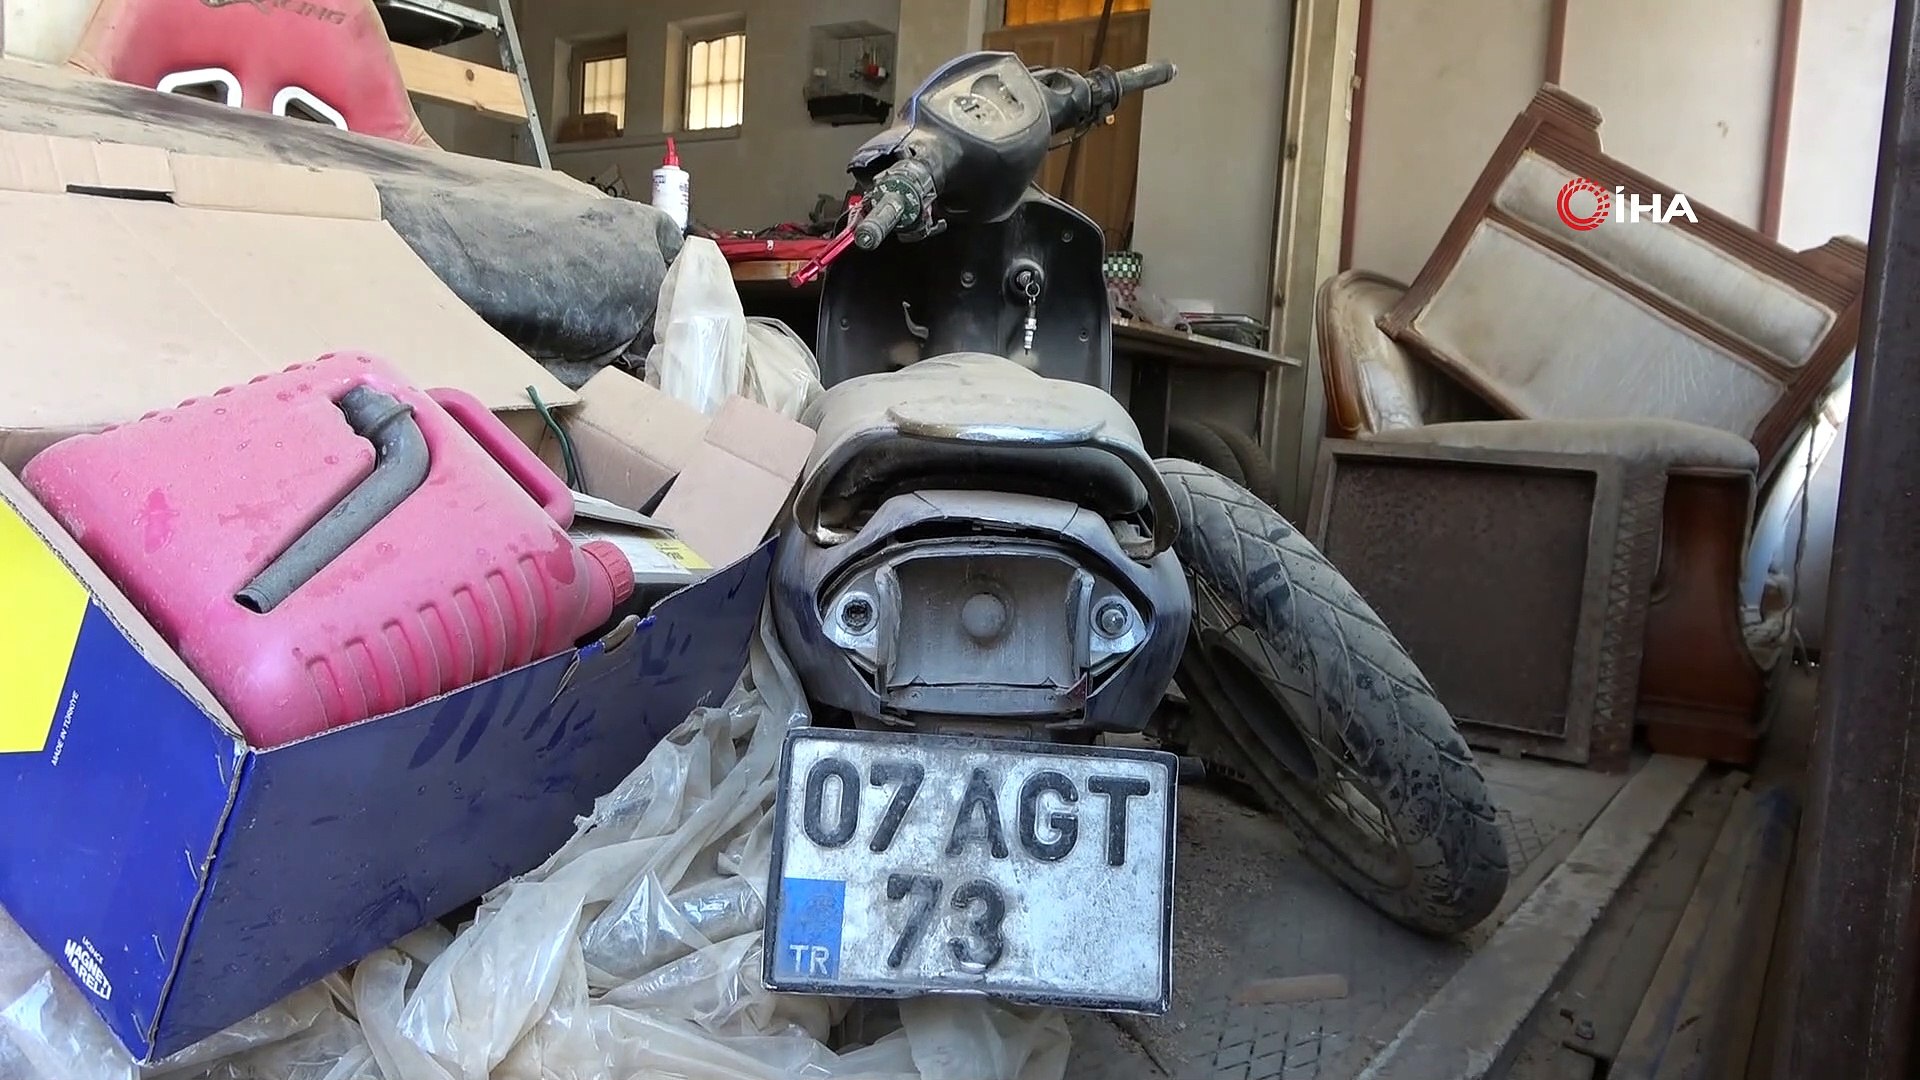 Trafikten düşürmediği hurda motosikletin faturası ağır oldu - Dailymotion  Video